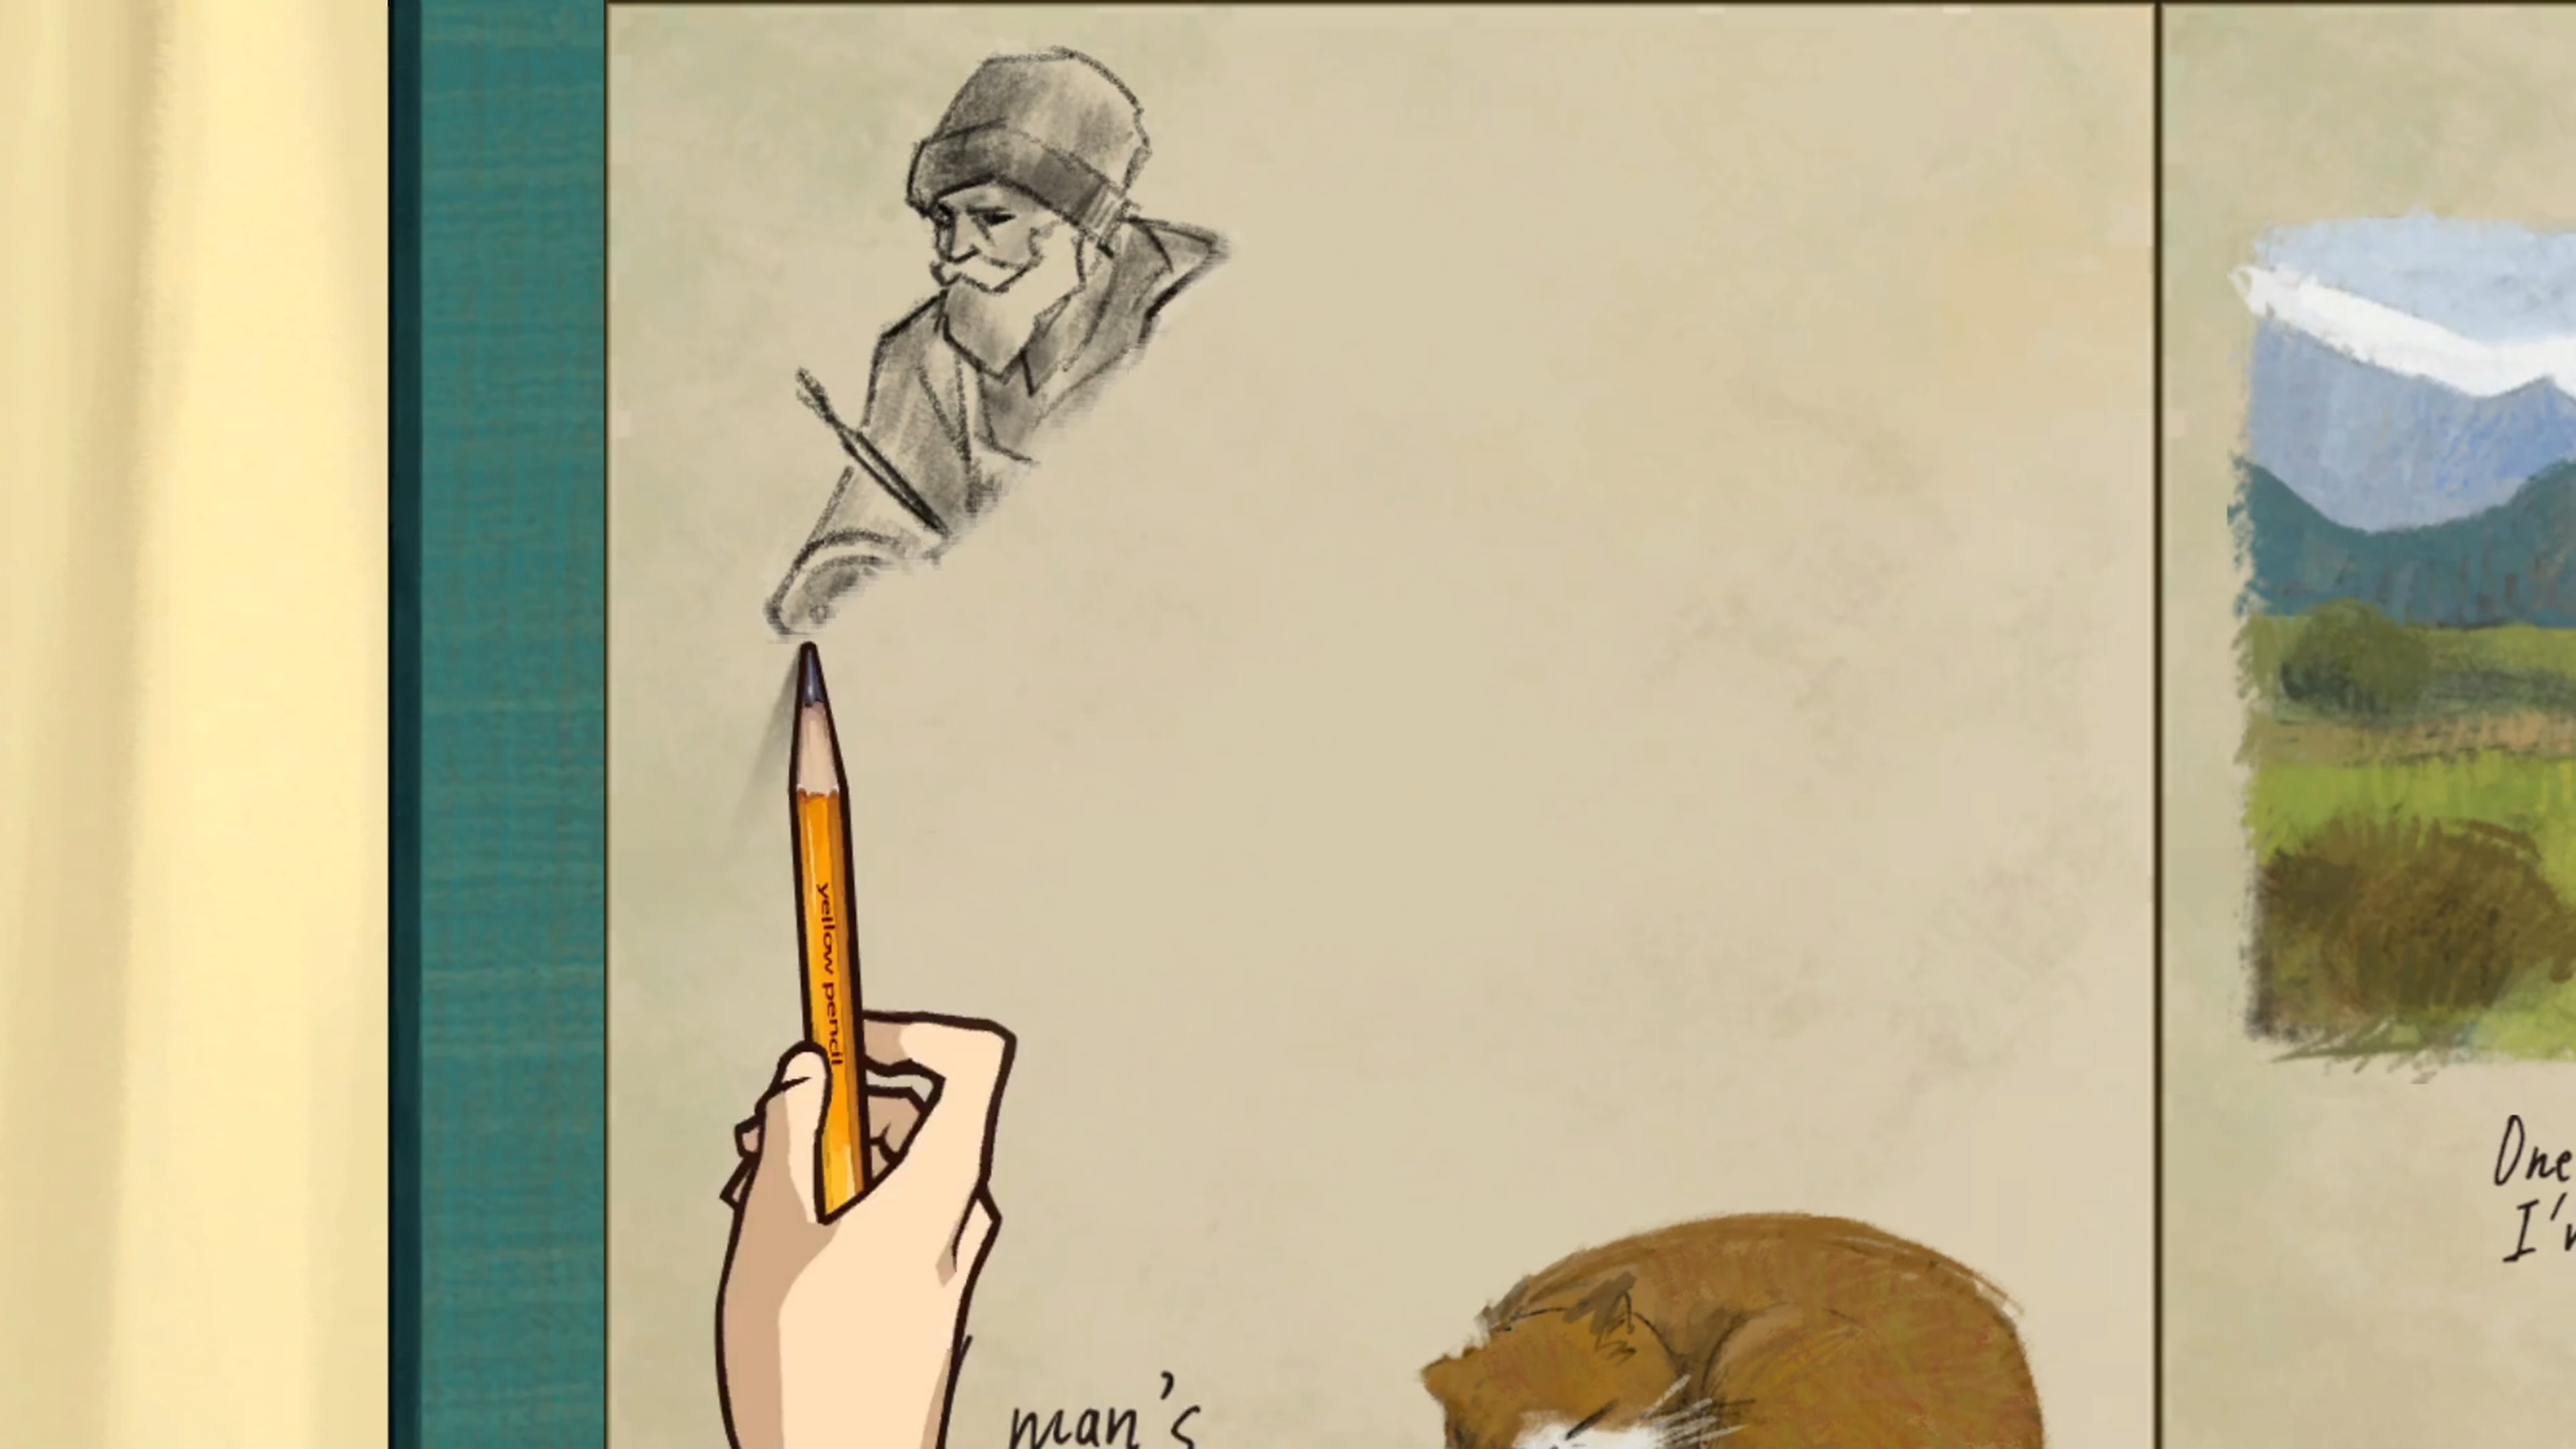 Behind the Frame: The Finest Scenery – skärmbild som visar en karaktär som ritar med en penna